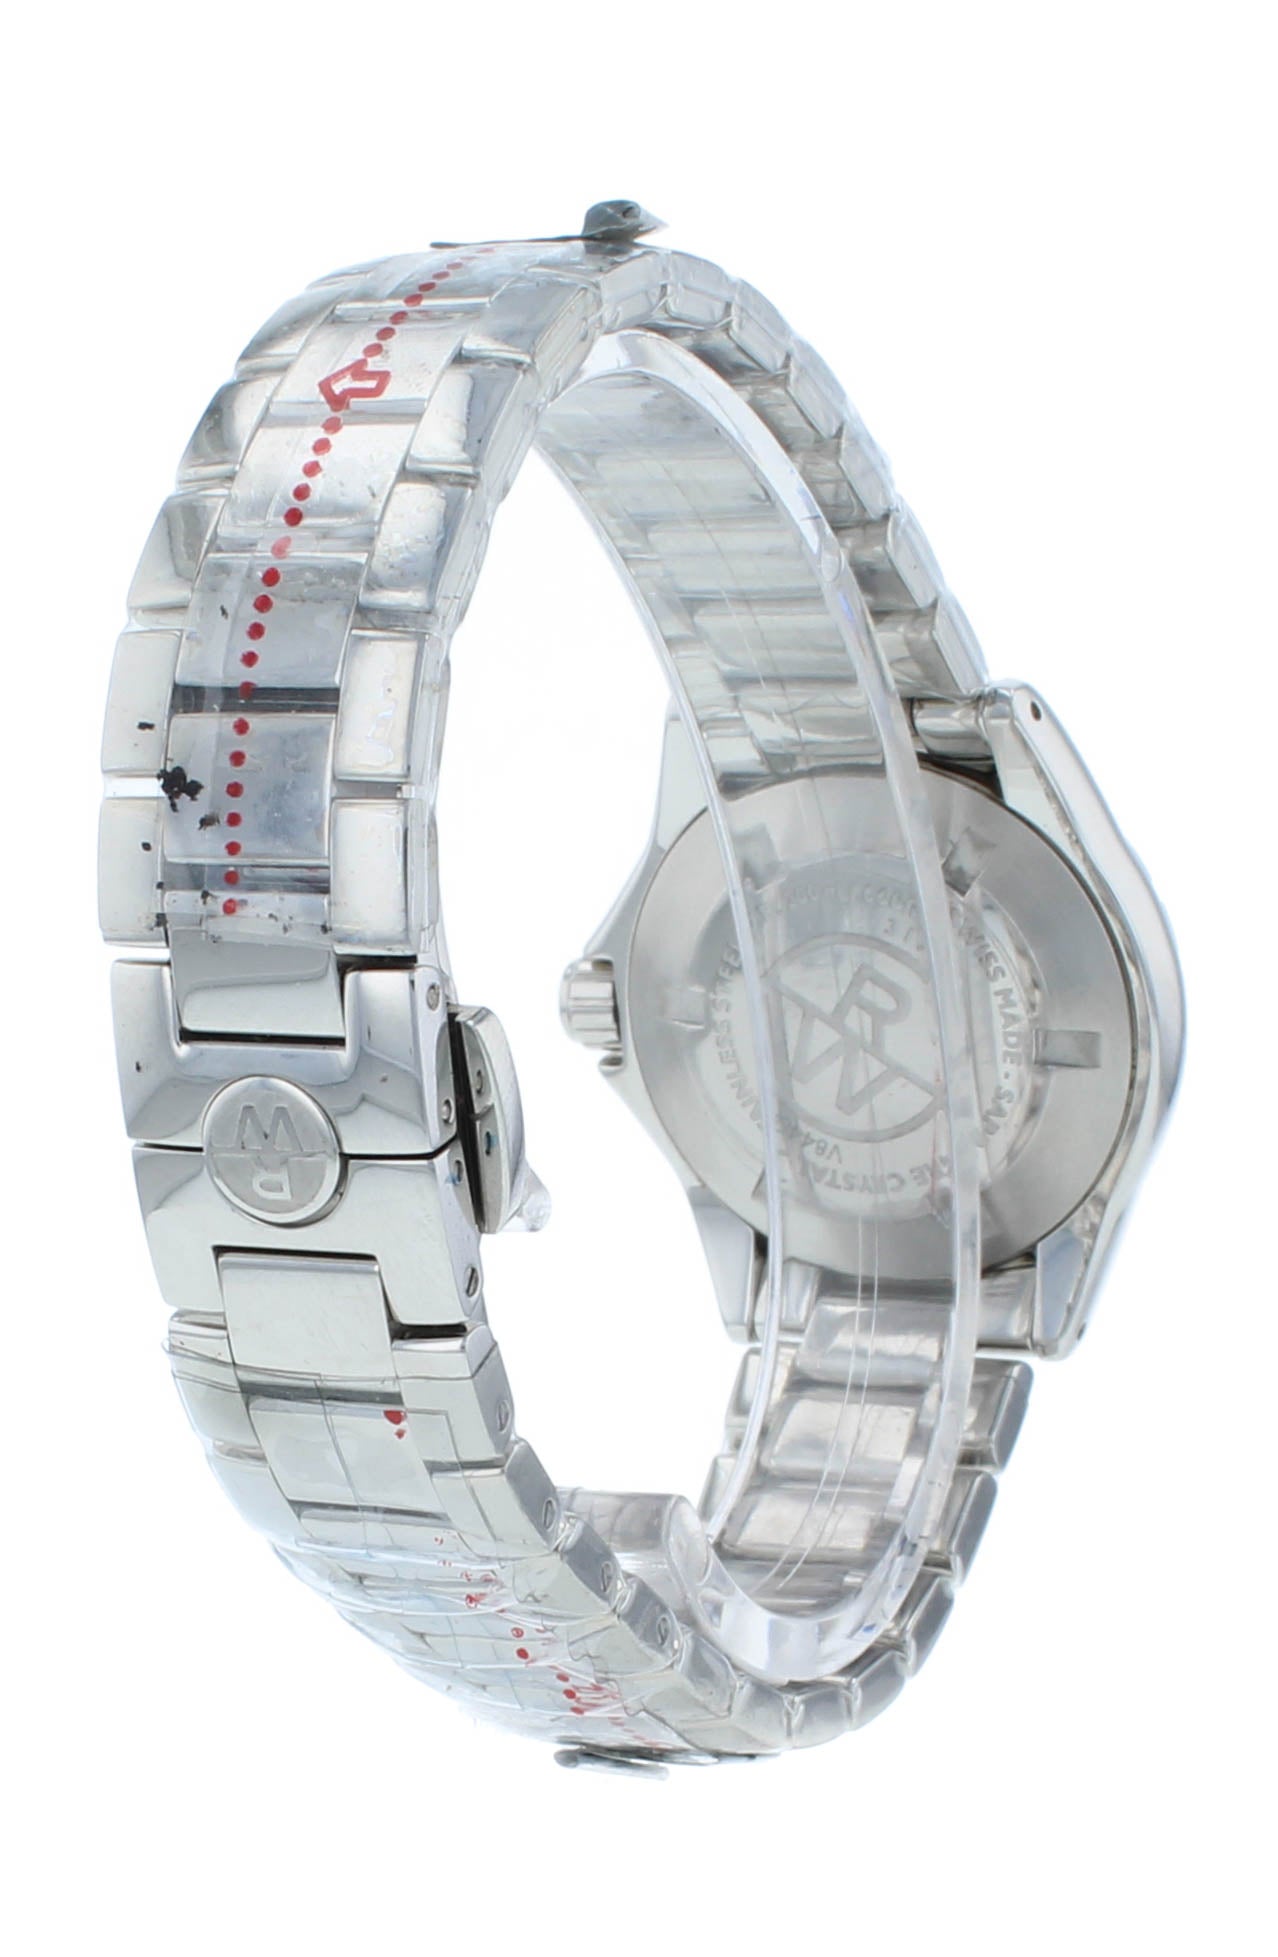 Raymond Weil Spirit 29mm Quartz White MOP Dial Steel Ladies Watch 3170-ST-05915